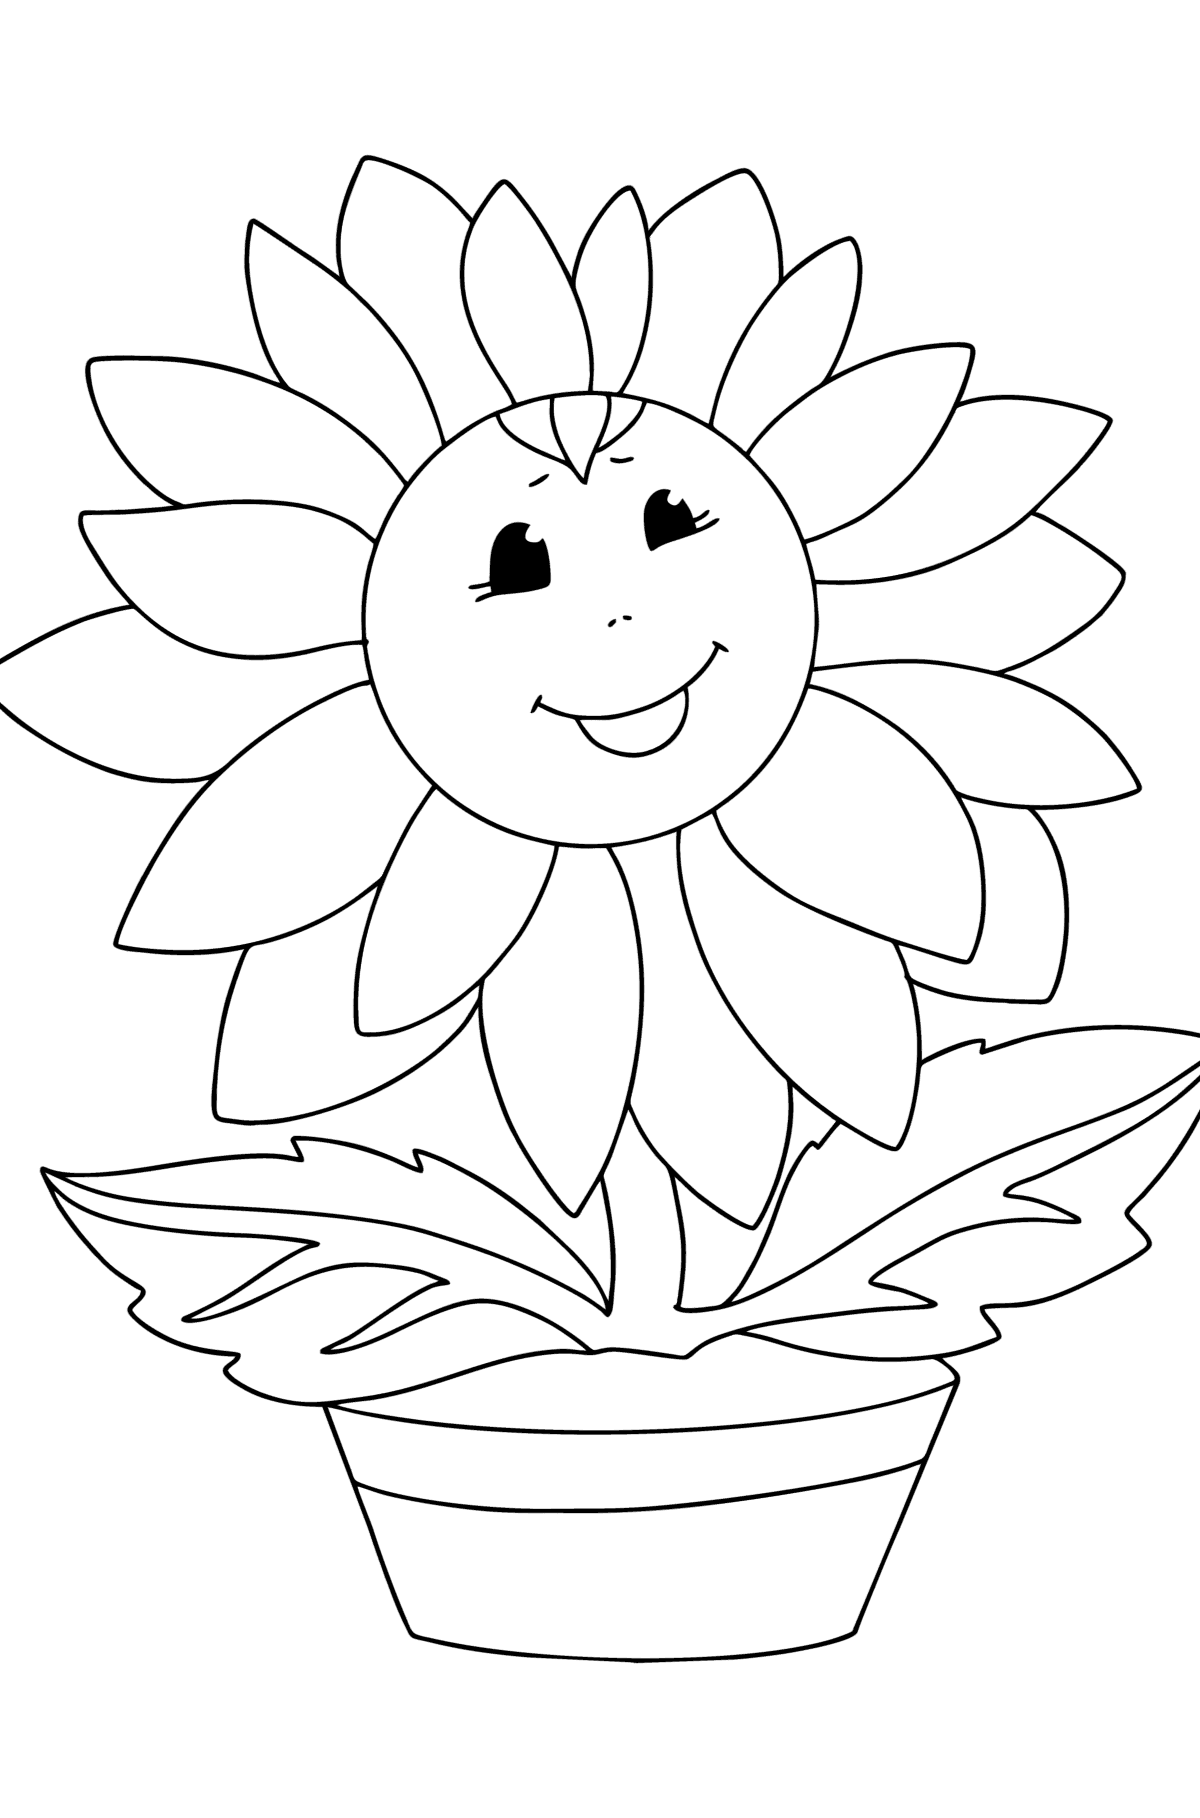 Desenho de Girassol com olhos para colorir - Imagens para Colorir para Crianças